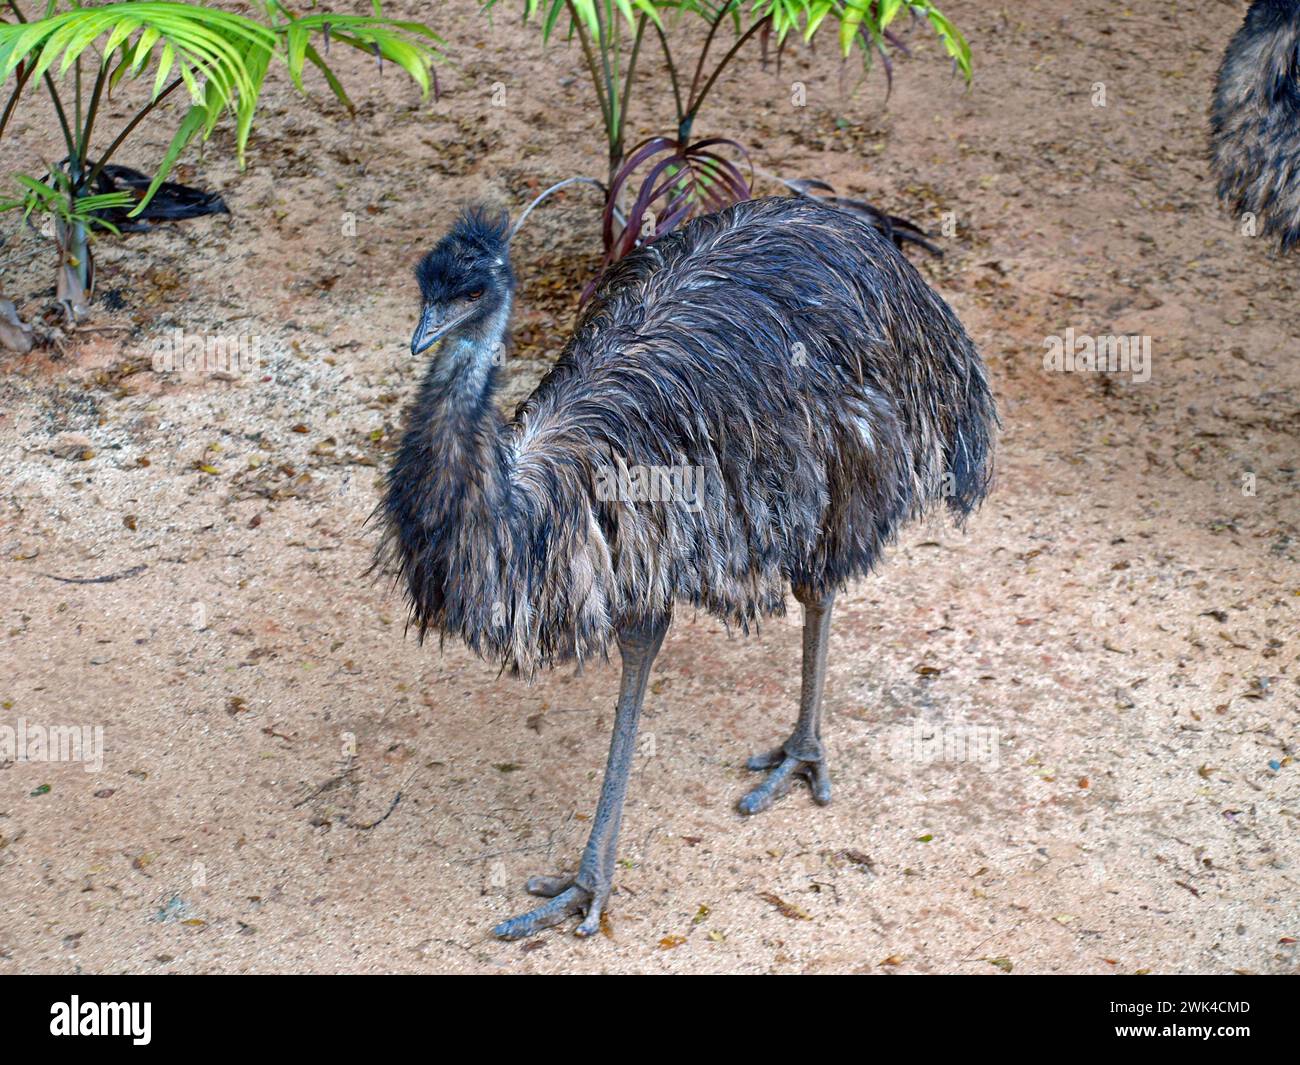 EMU (Dromaius novaehollandiae). Questo è il secondo uccello vivente più alto dopo lo struzzo. Uccello australiano. Foto Stock